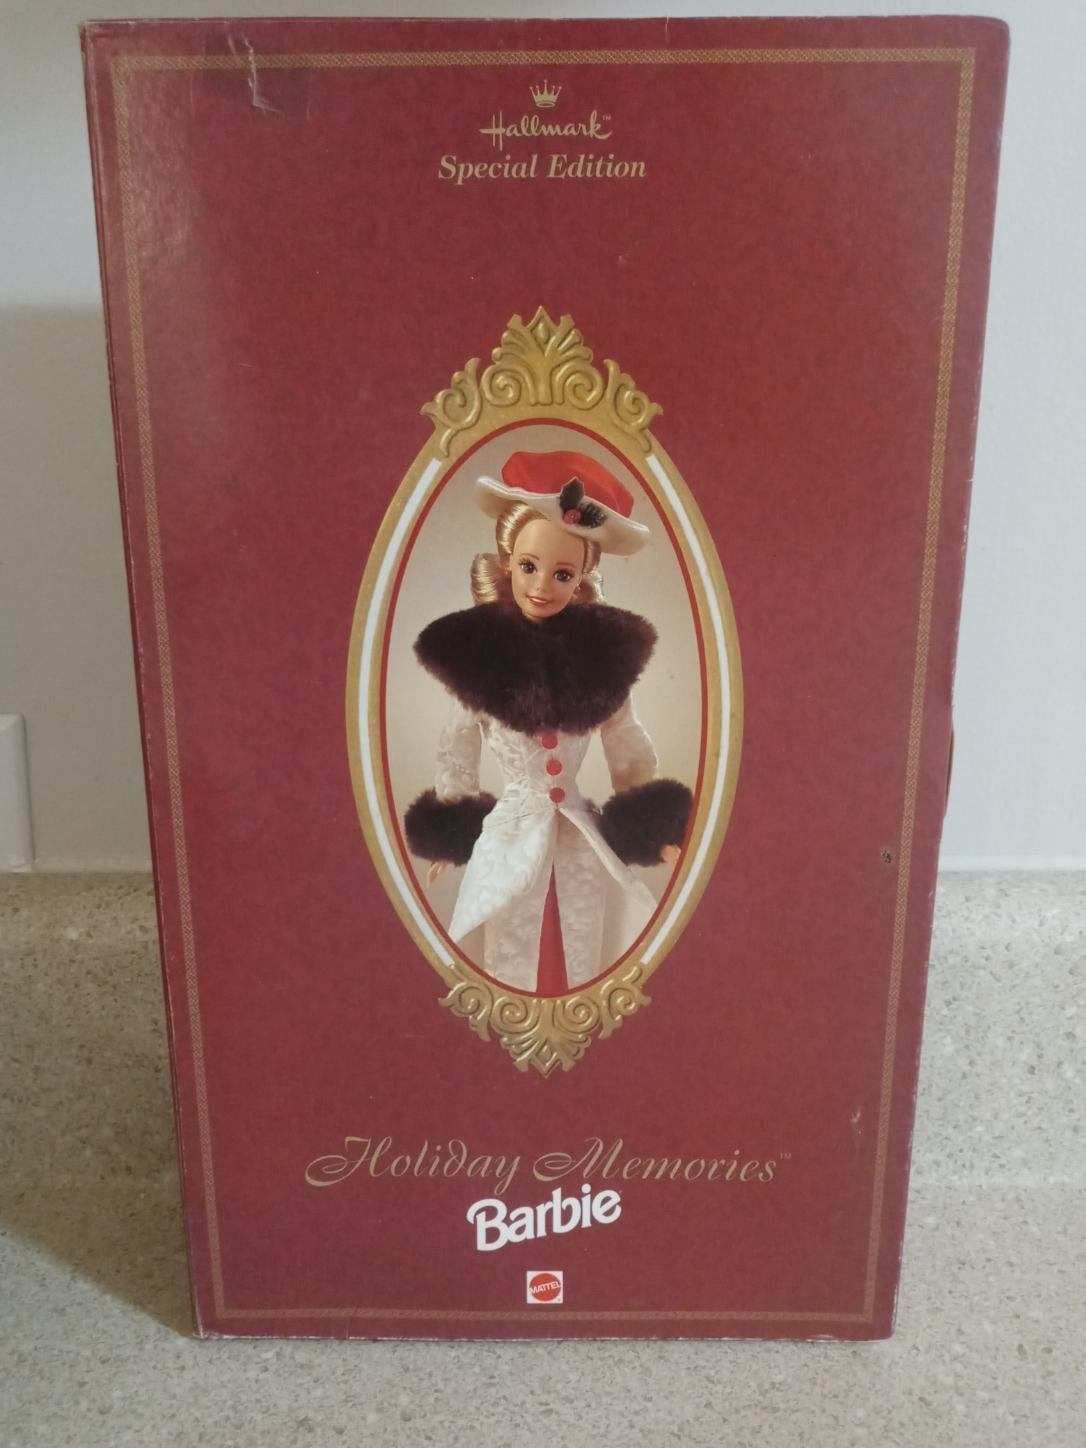 1995 Hallmark Special Edition Holiday Memories Barbie